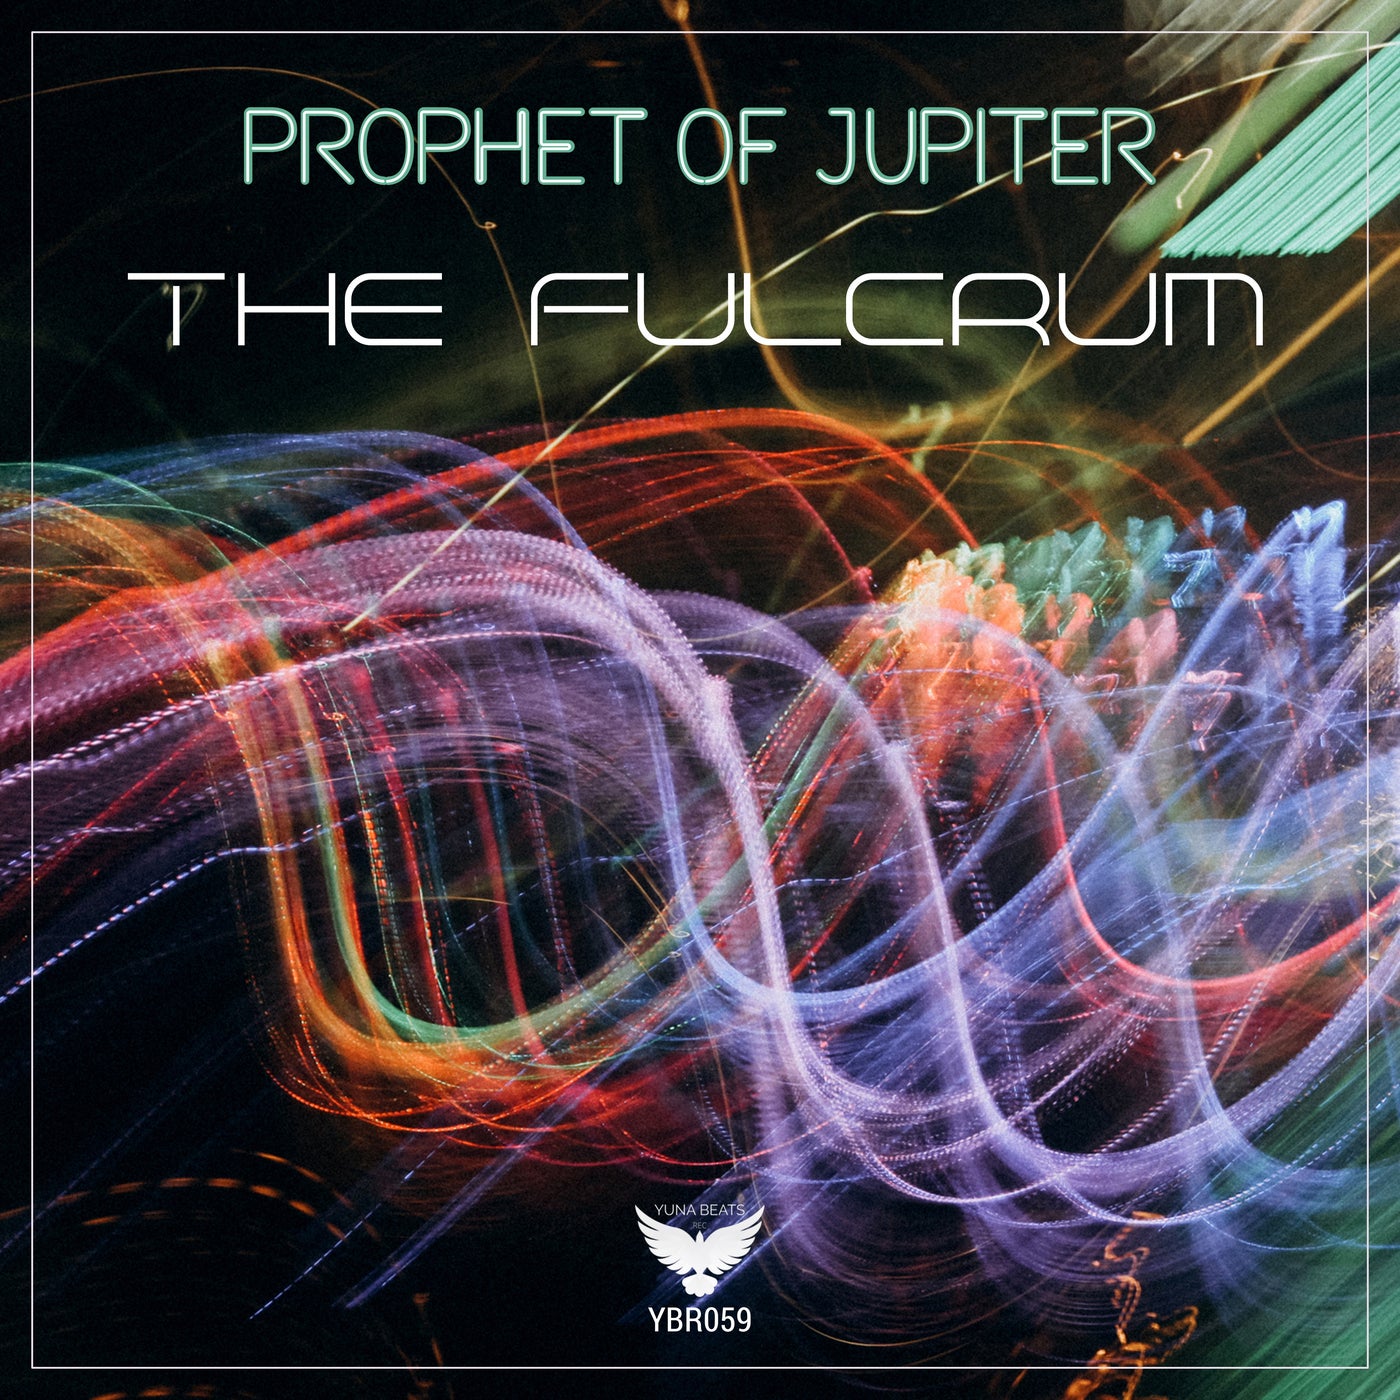 The Fulcrum